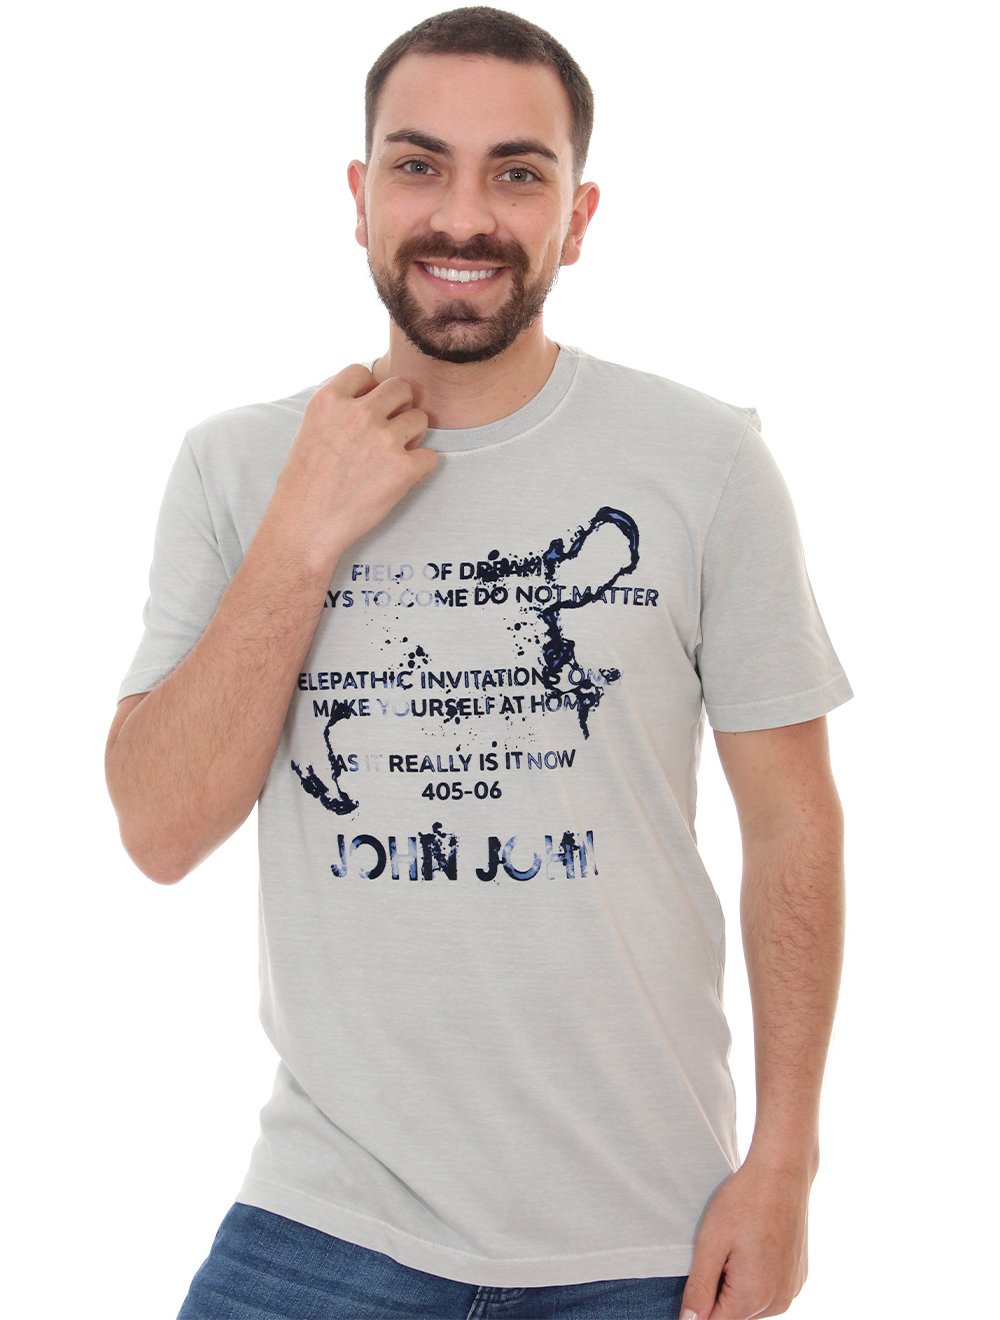 Camiseta Cavalera Masculina Original Melted Eagle em Promoção na